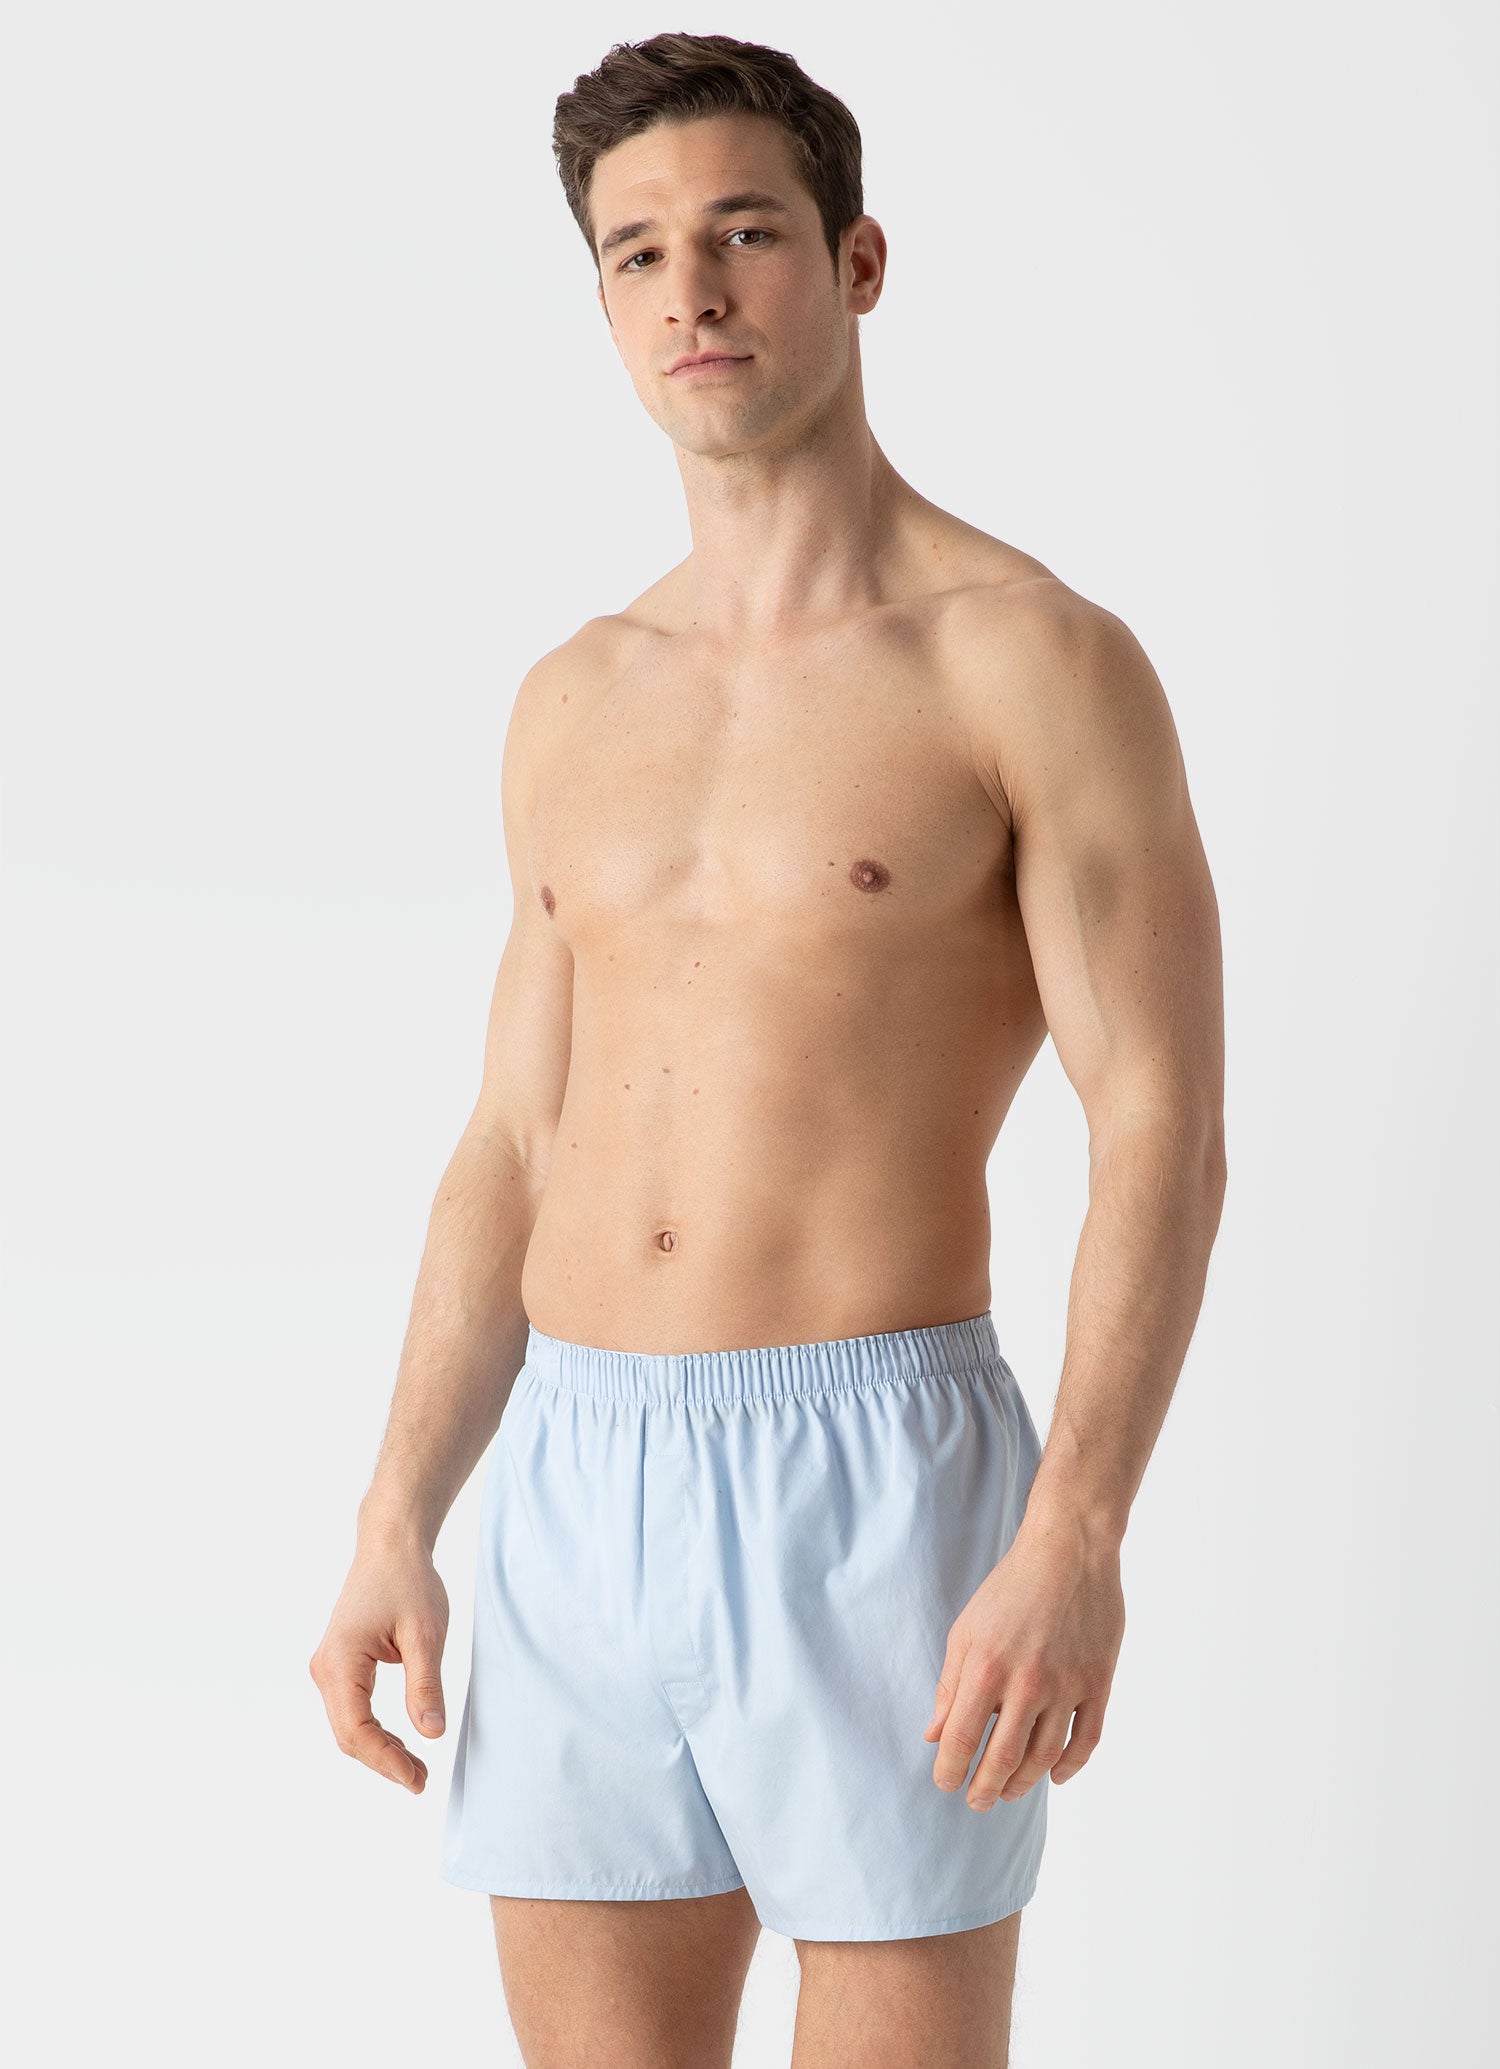 Men's Classic Boxer Shorts in Plain Blue